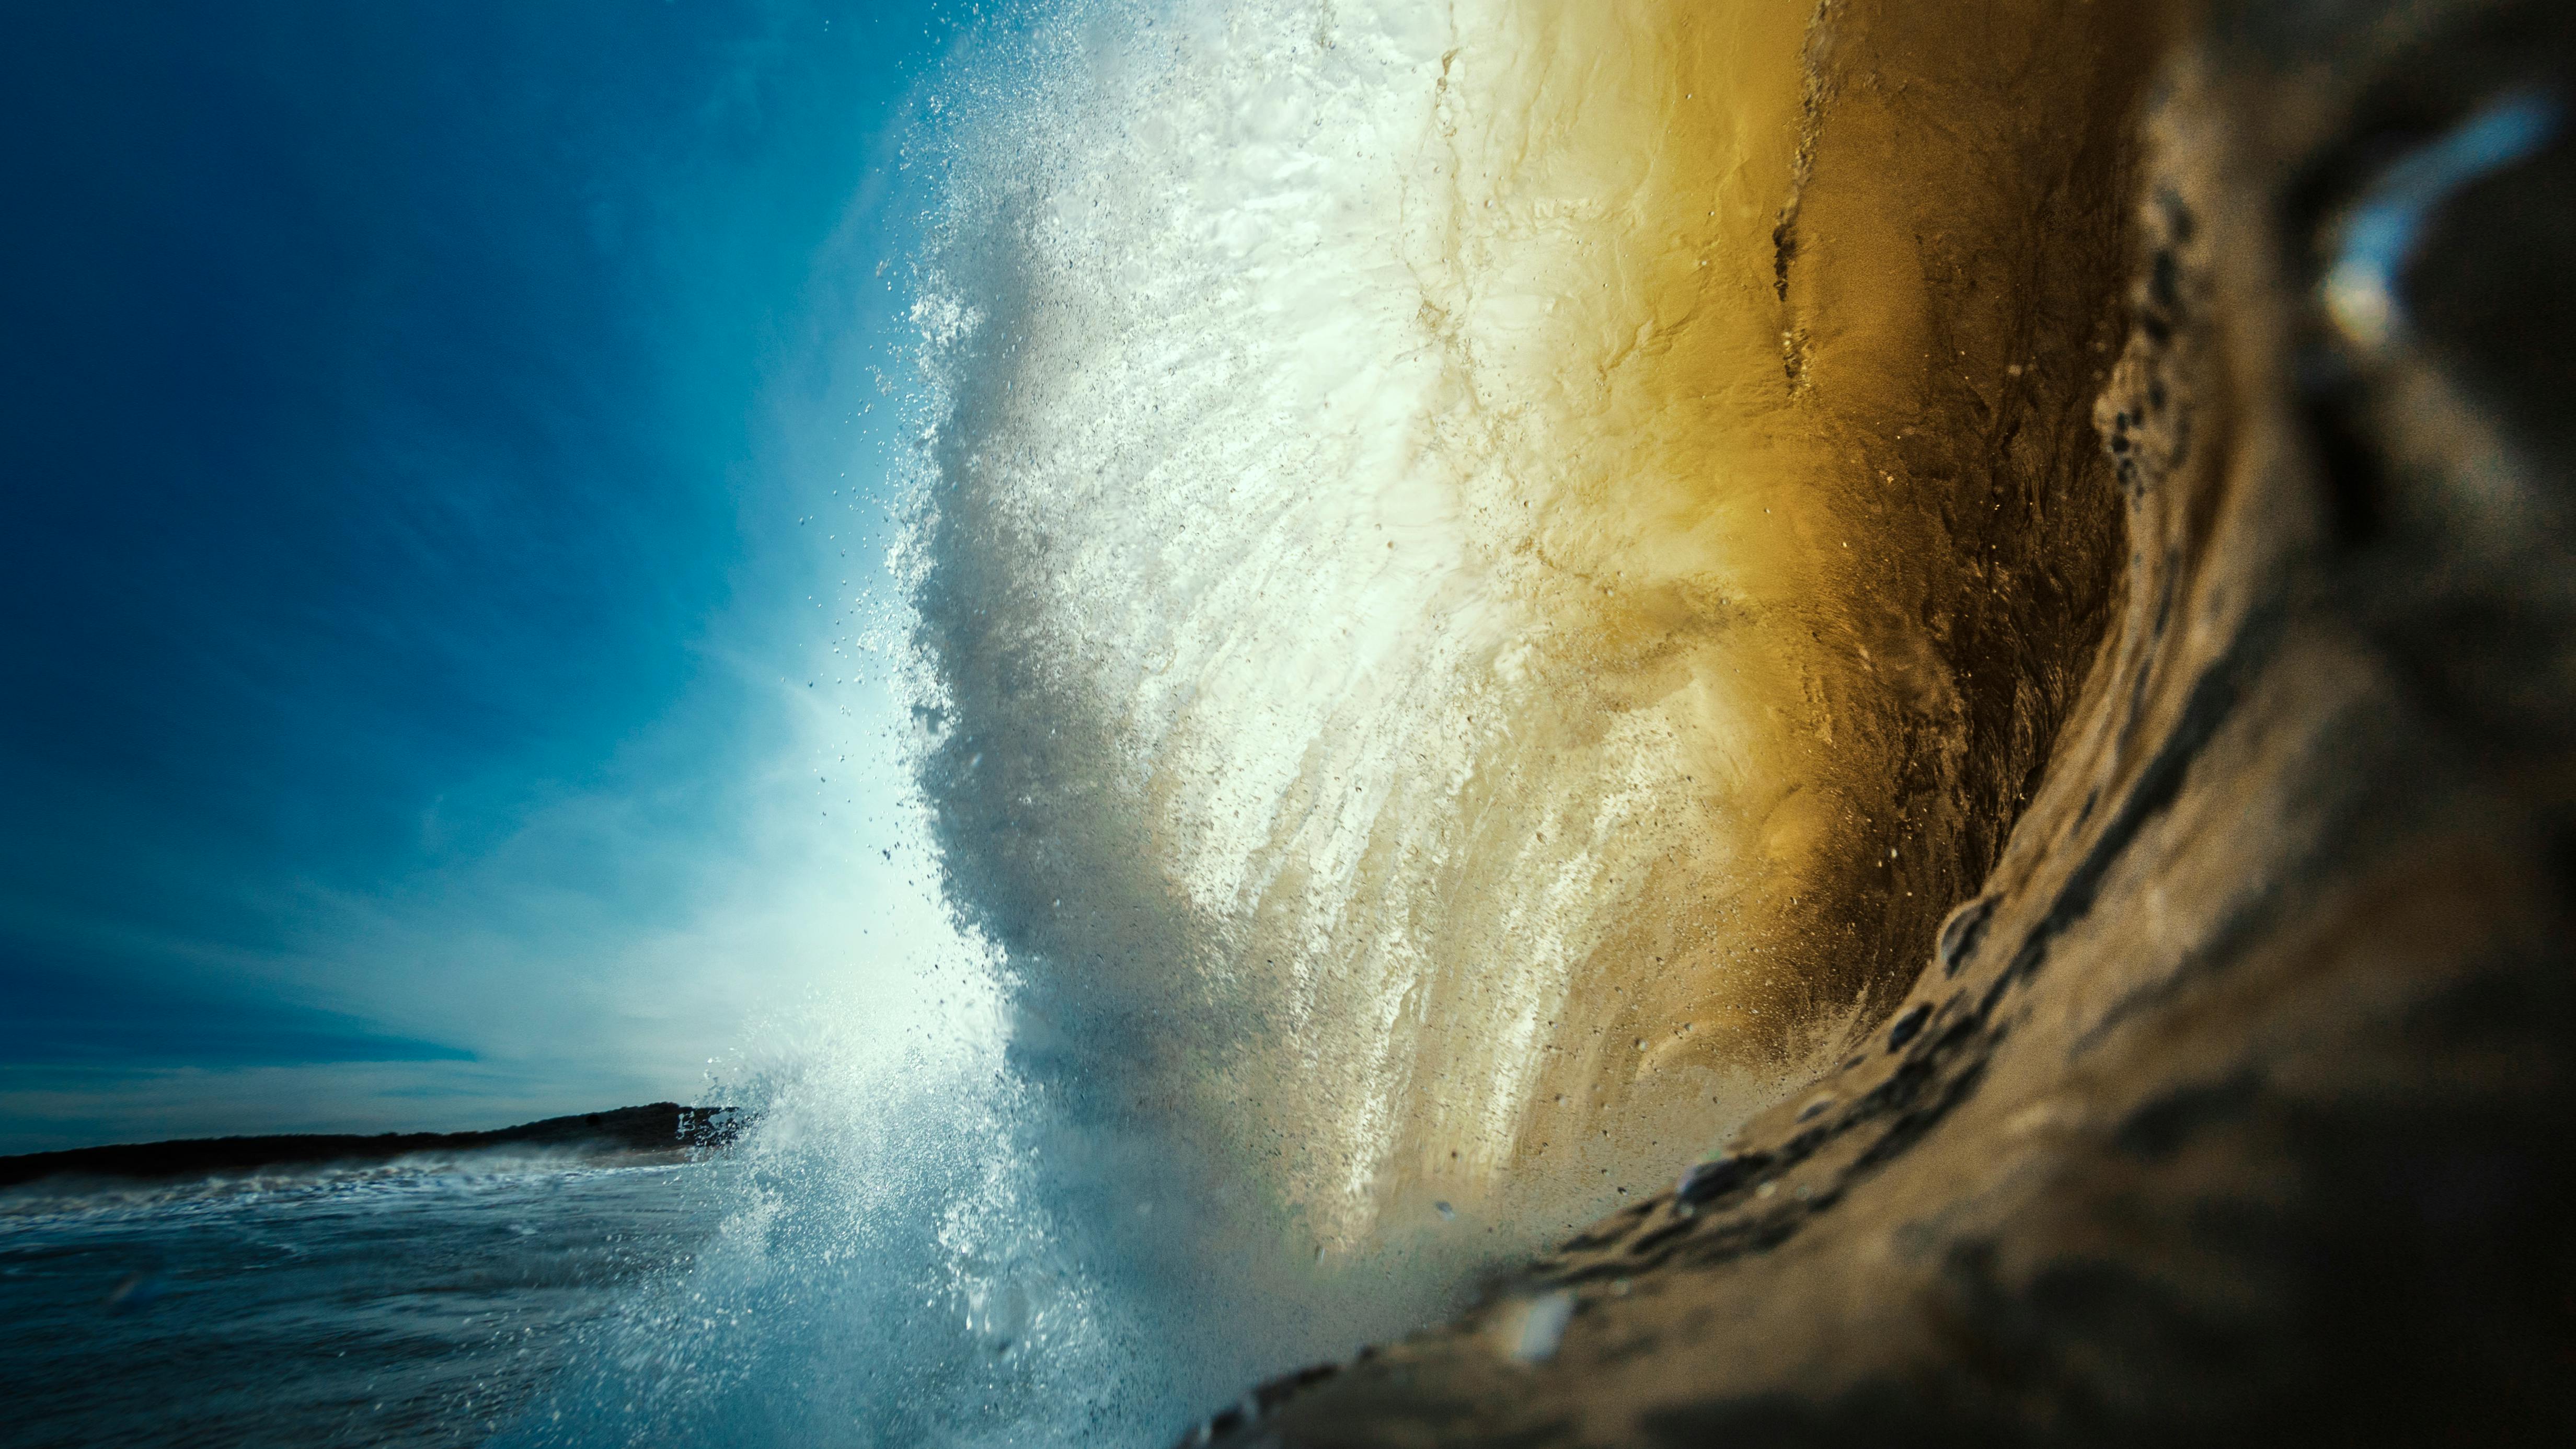 Hình ảnh Sóng Biển Cận Cảnh Hình ảnh Làn Sóng Lớn Trên Nền Xanh | Nền JPG  Tải xuống miễn phí - Pikbest